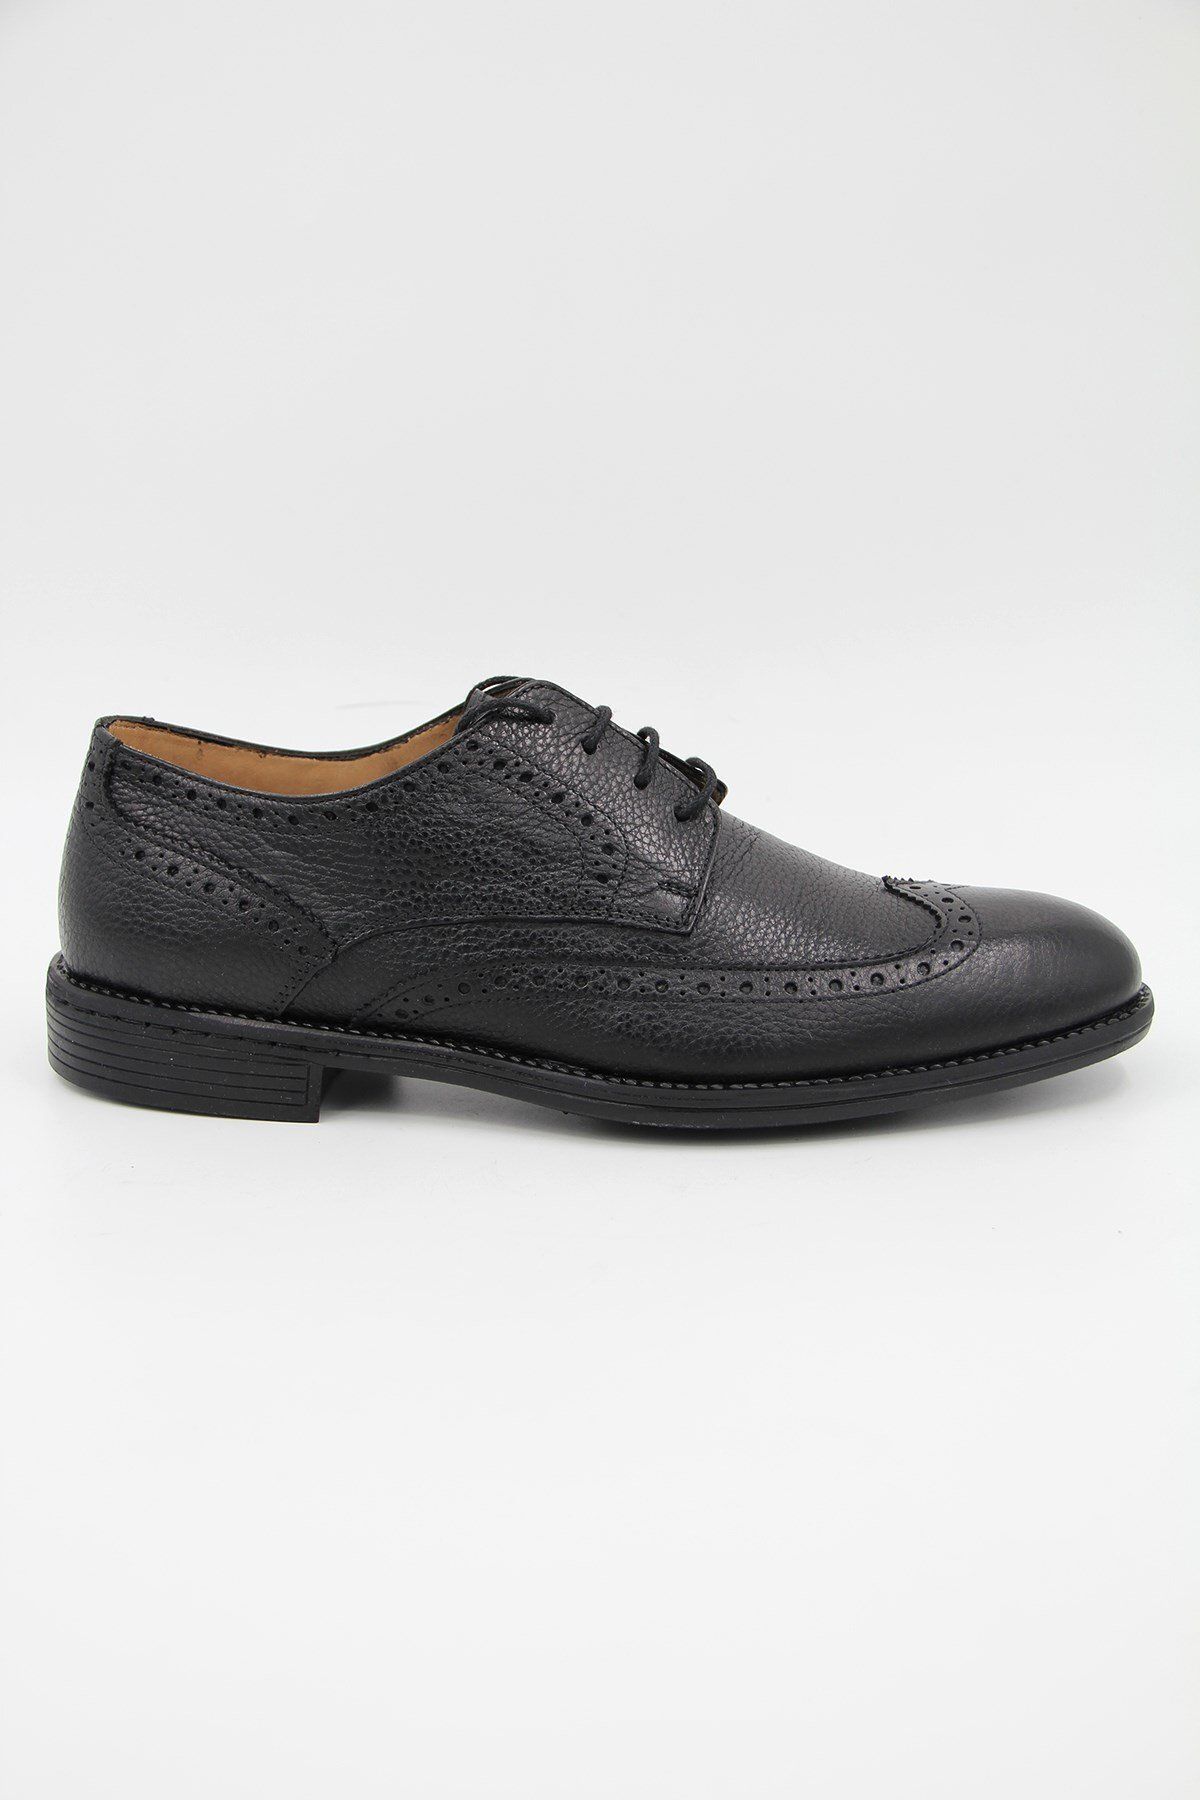 DANACI Danacı 150 Erkek Klasik Ayakkabı - Siyah